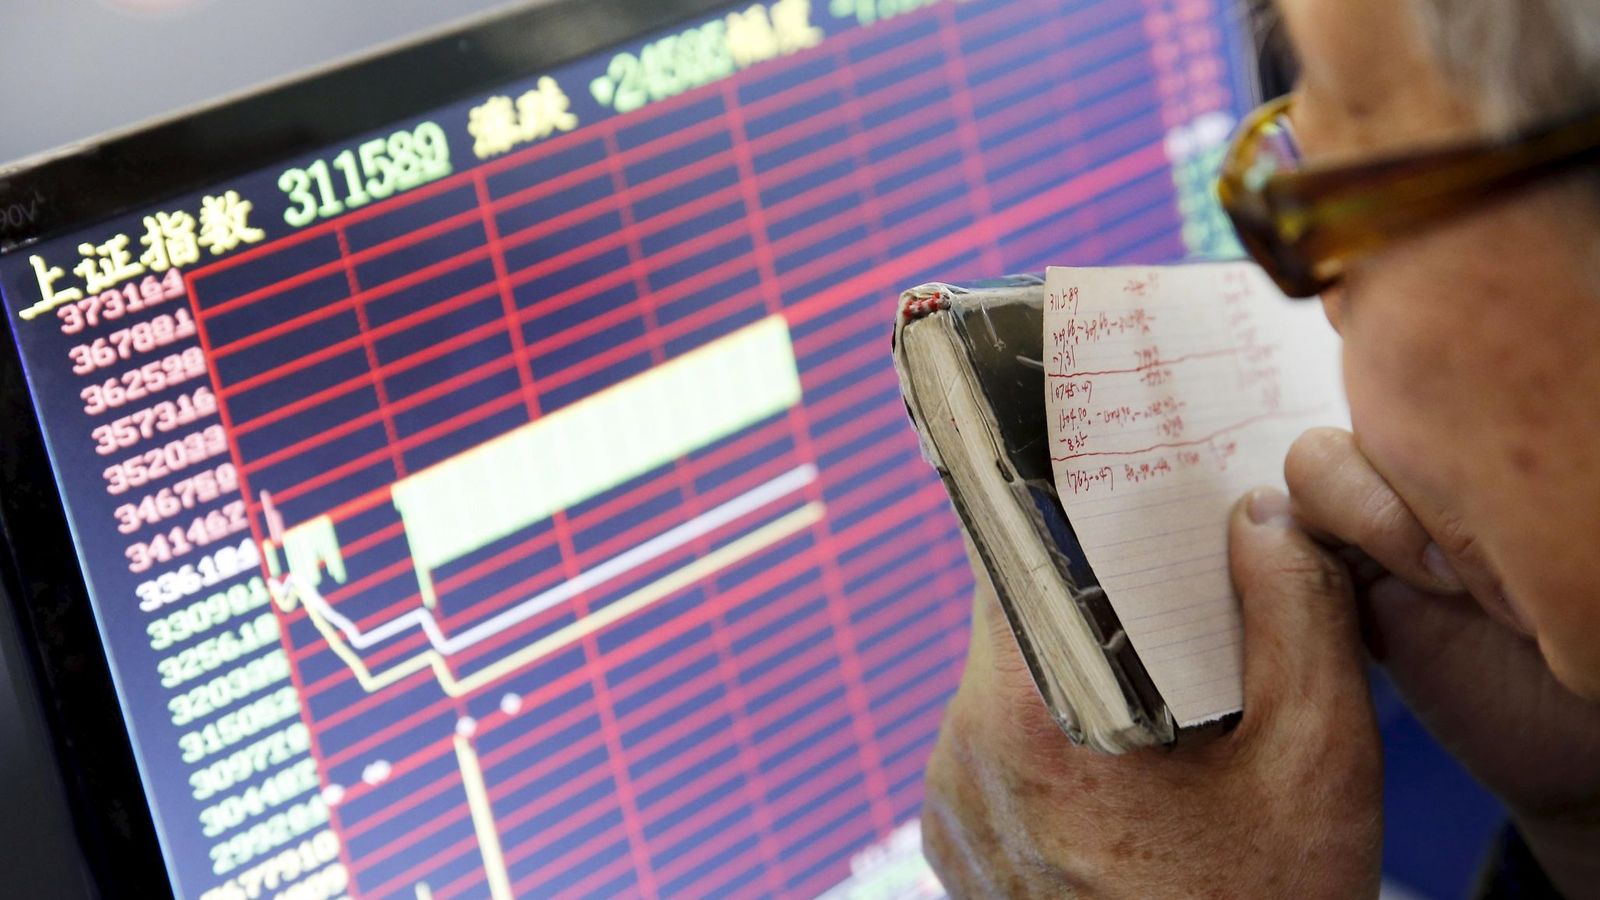 Foto: Un inversor mira uno de los paneles de la bolsa china. (EFE)